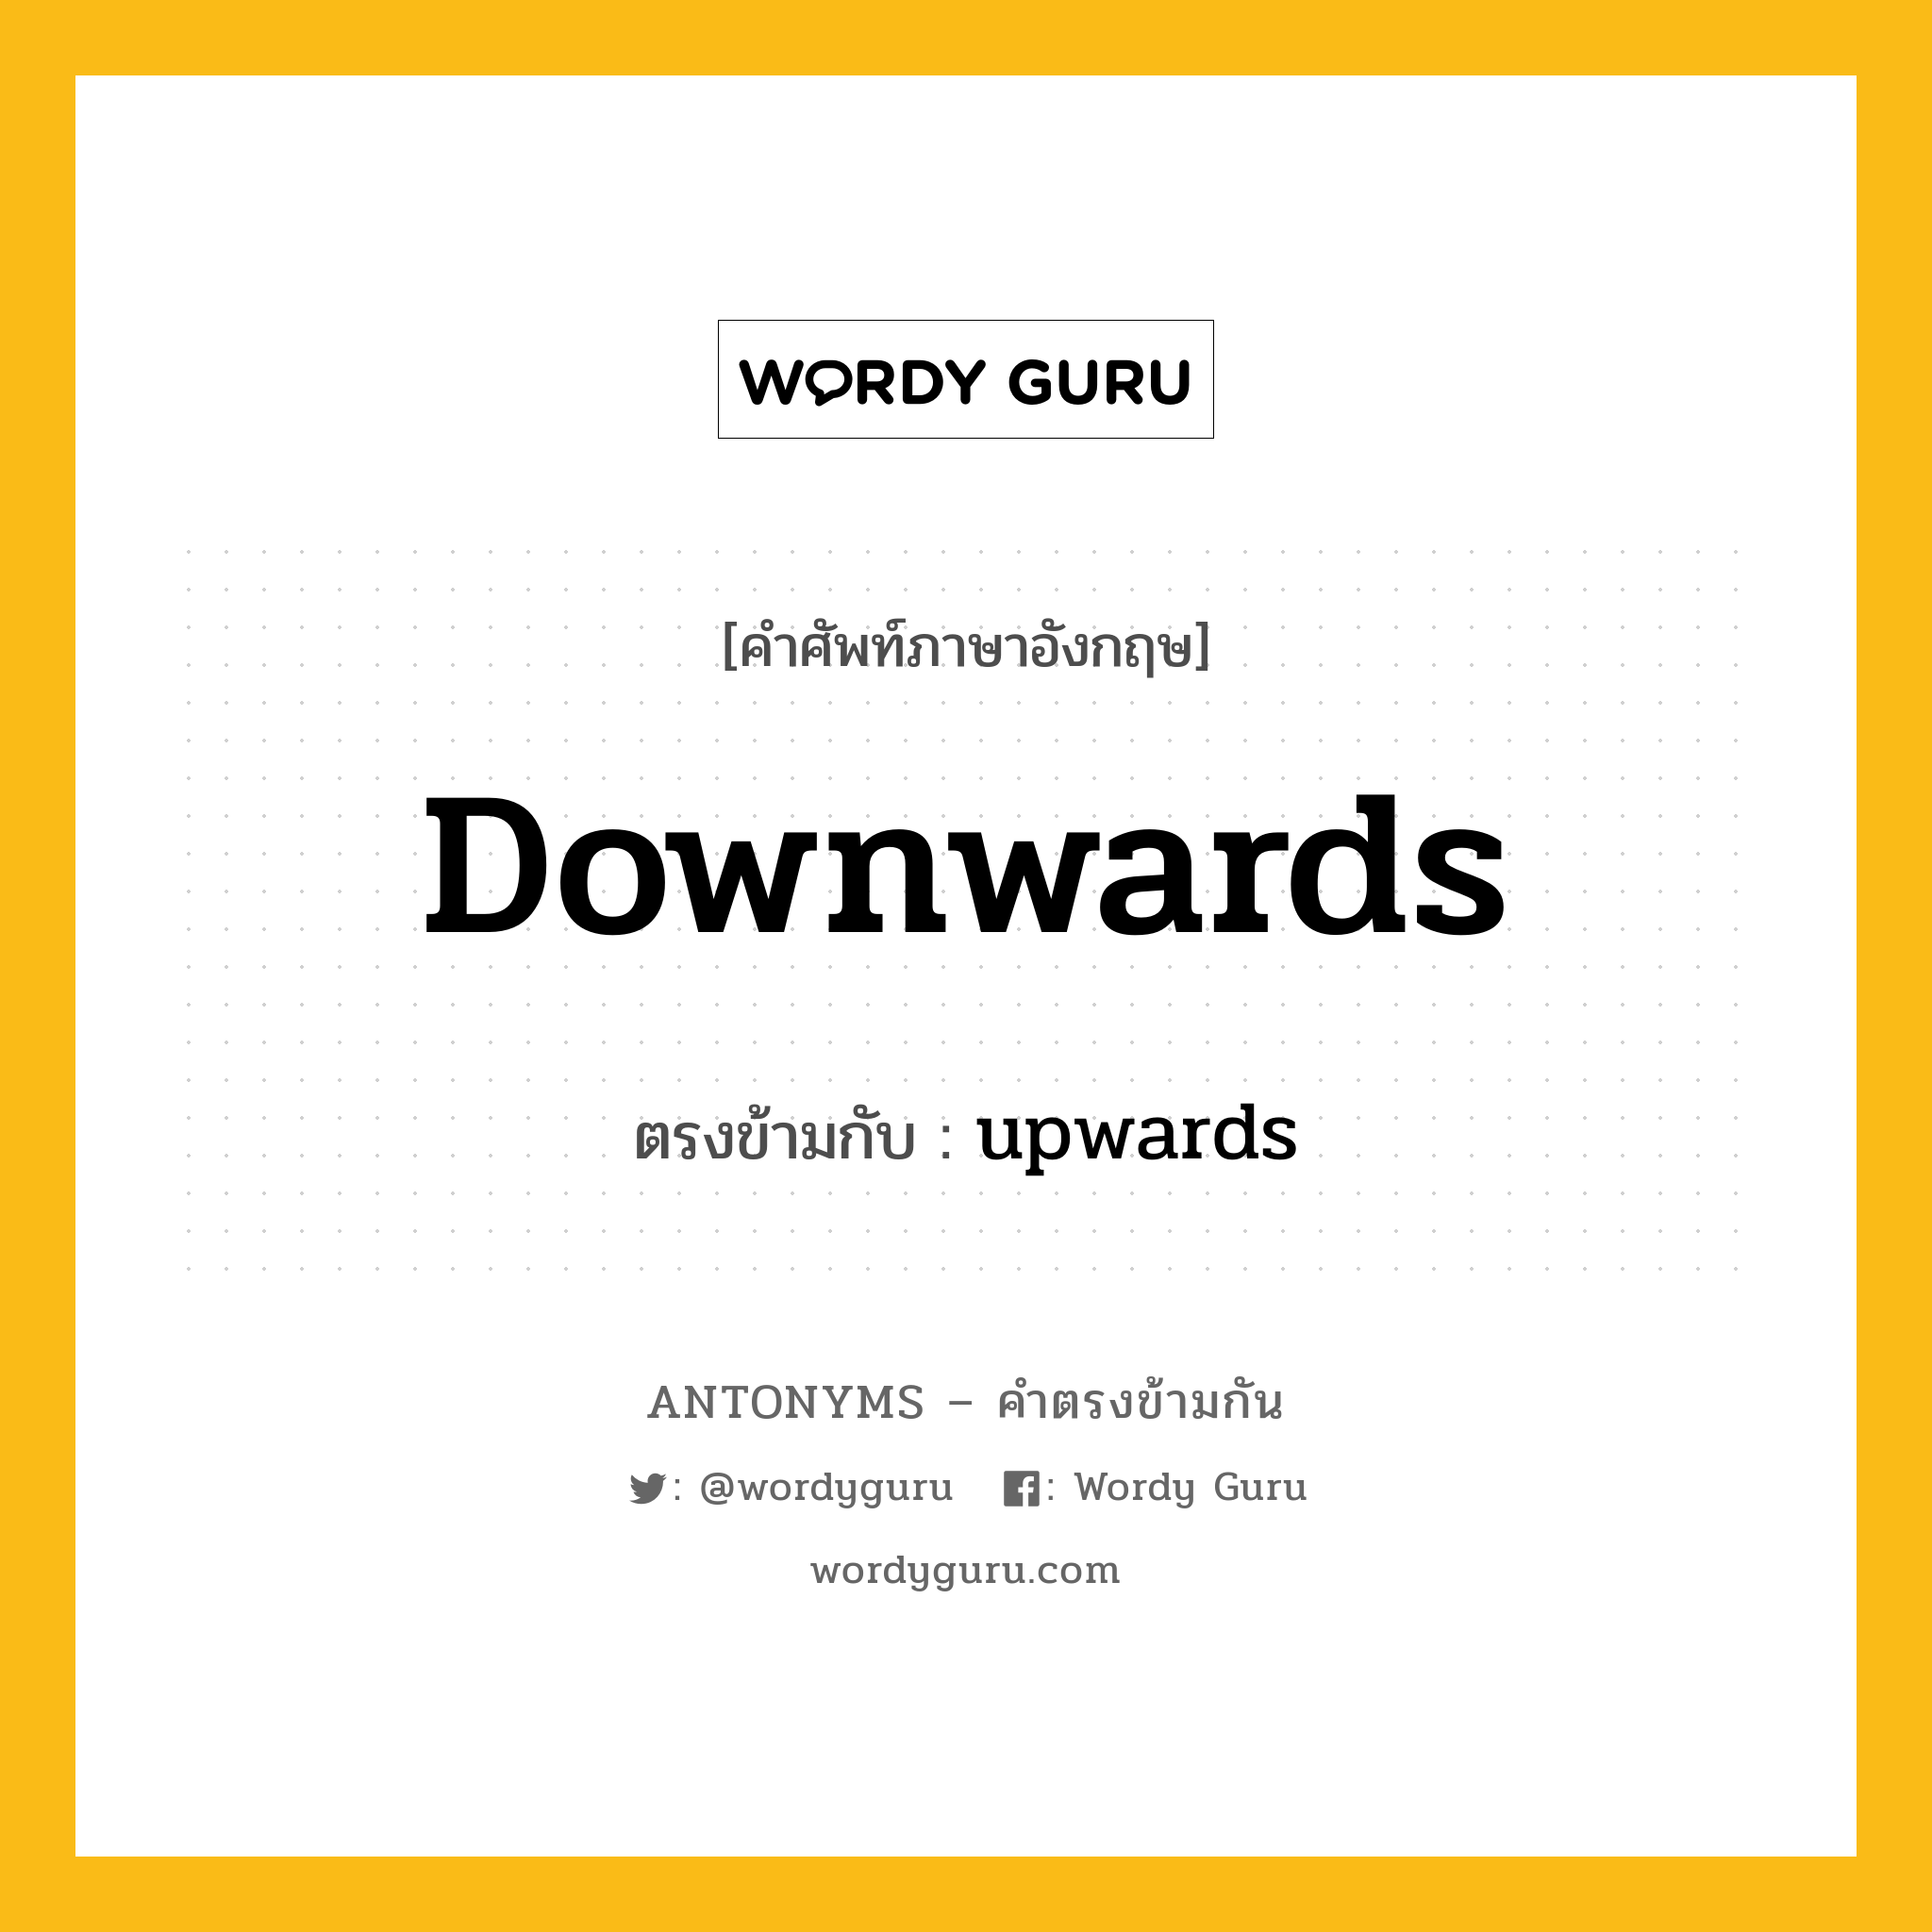 downwards เป็นคำตรงข้ามกับคำไหนบ้าง?, คำศัพท์ภาษาอังกฤษ downwards ตรงข้ามกับ upwards หมวด upwards